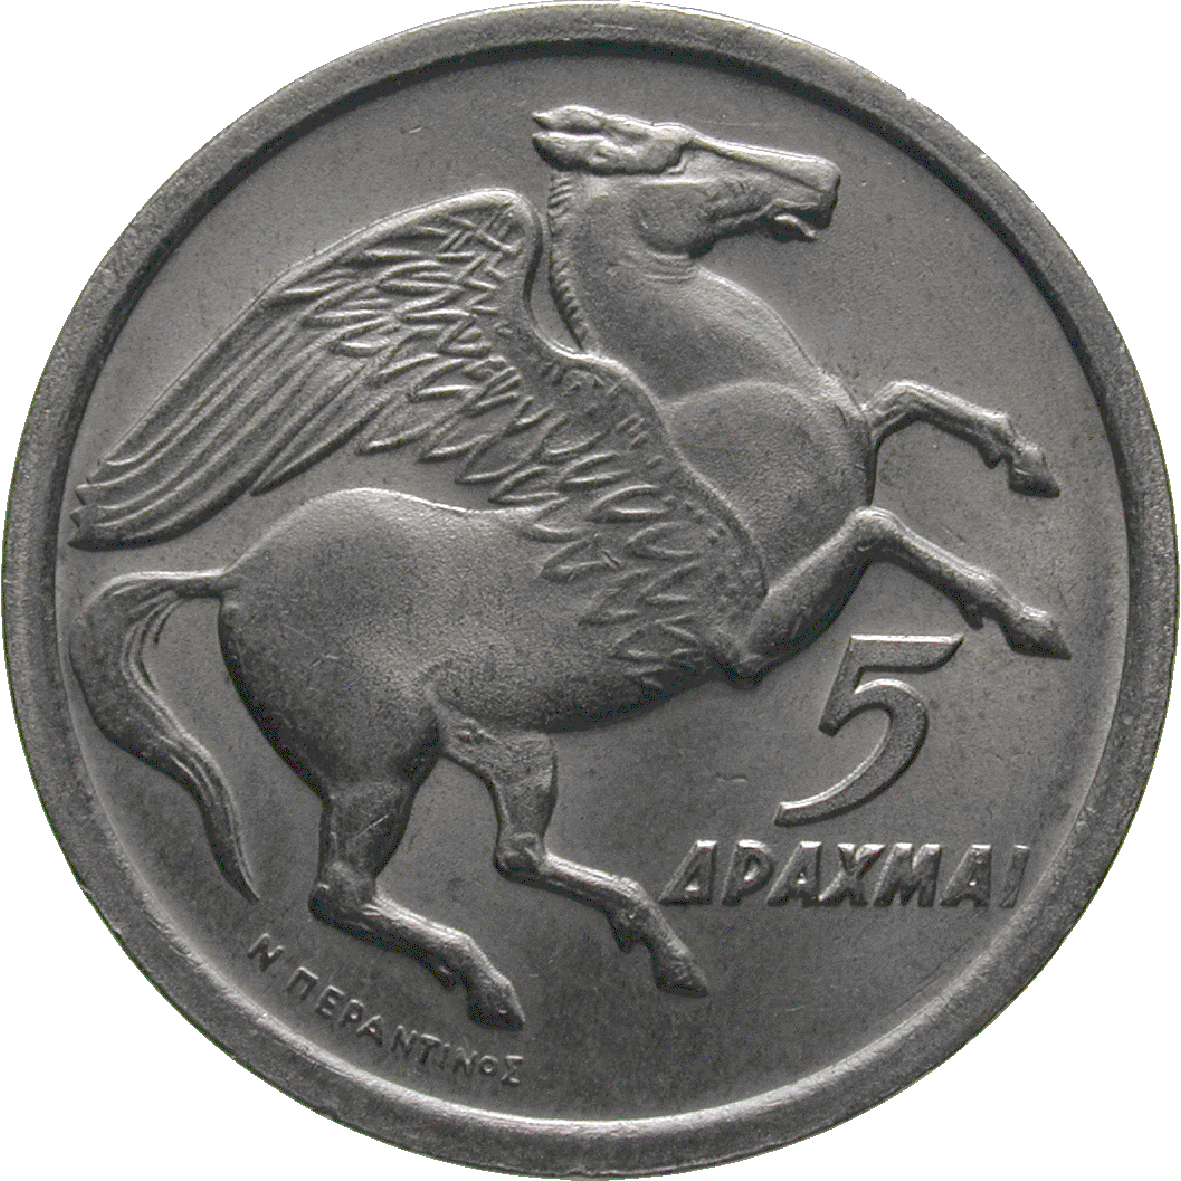 Republik Griechenland, 5 Drachmen 1973 (reverse)